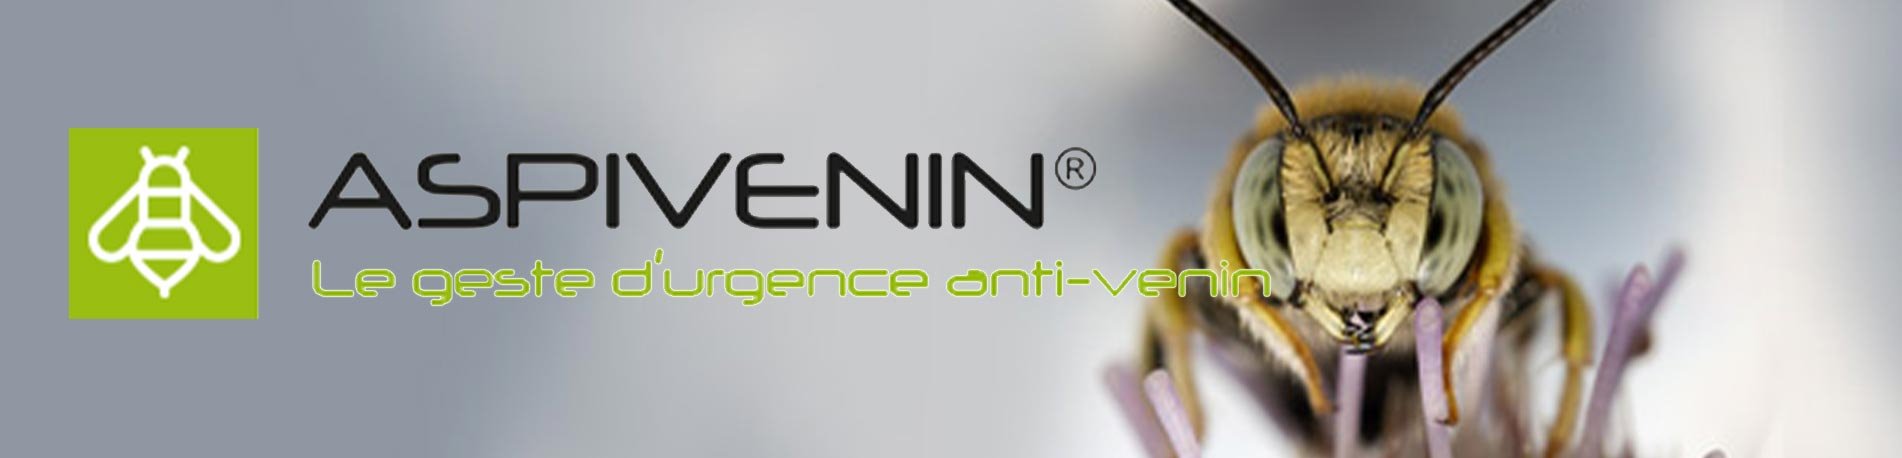 Aspivenin : Le geste anti-venin de premier secours